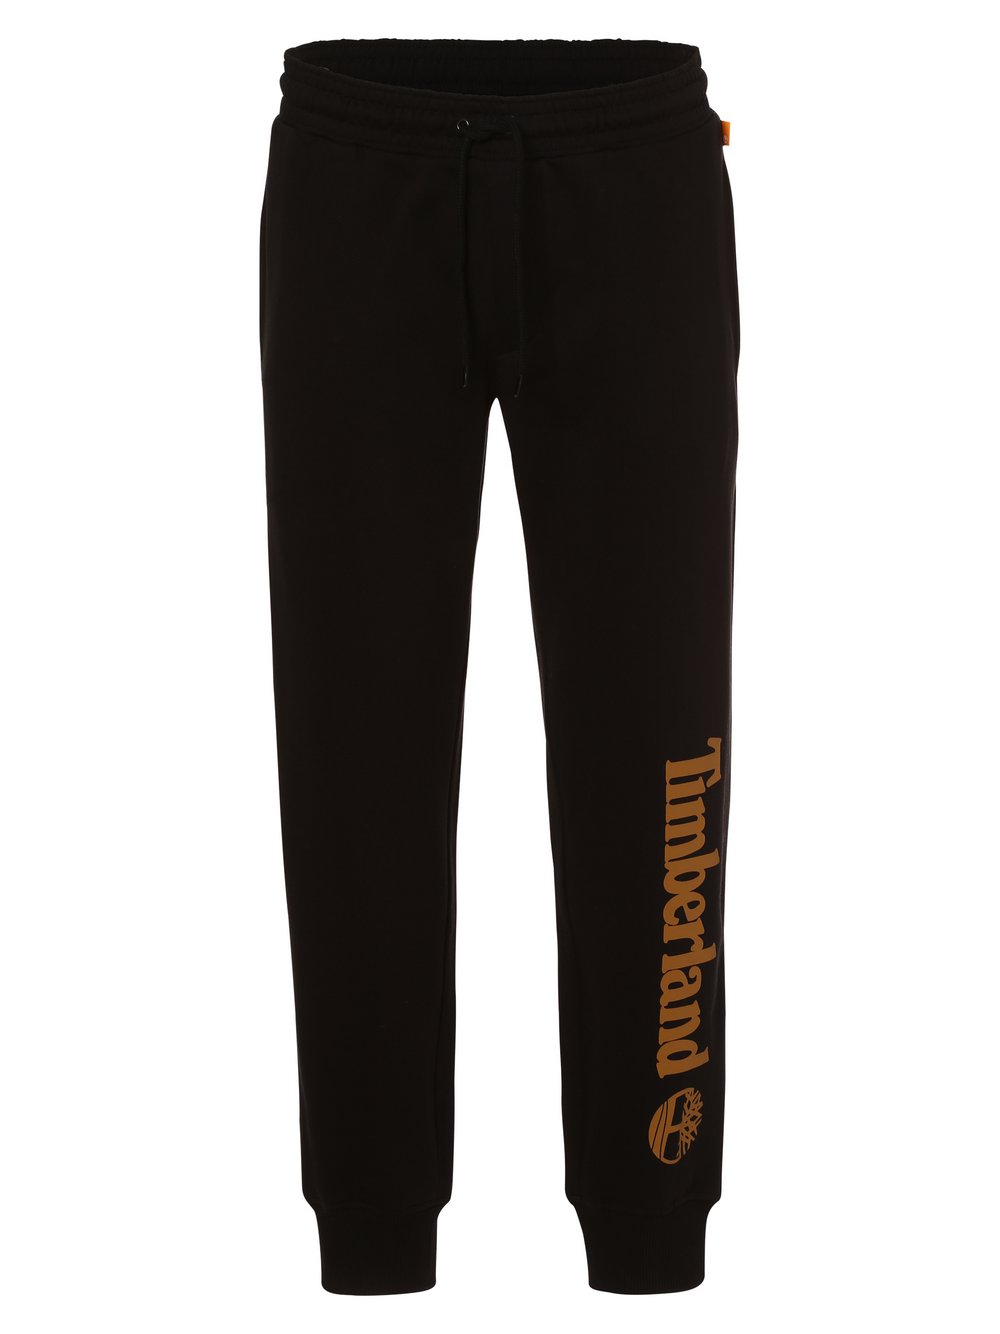 Timberland - Spodnie dresowe męskie, czarny